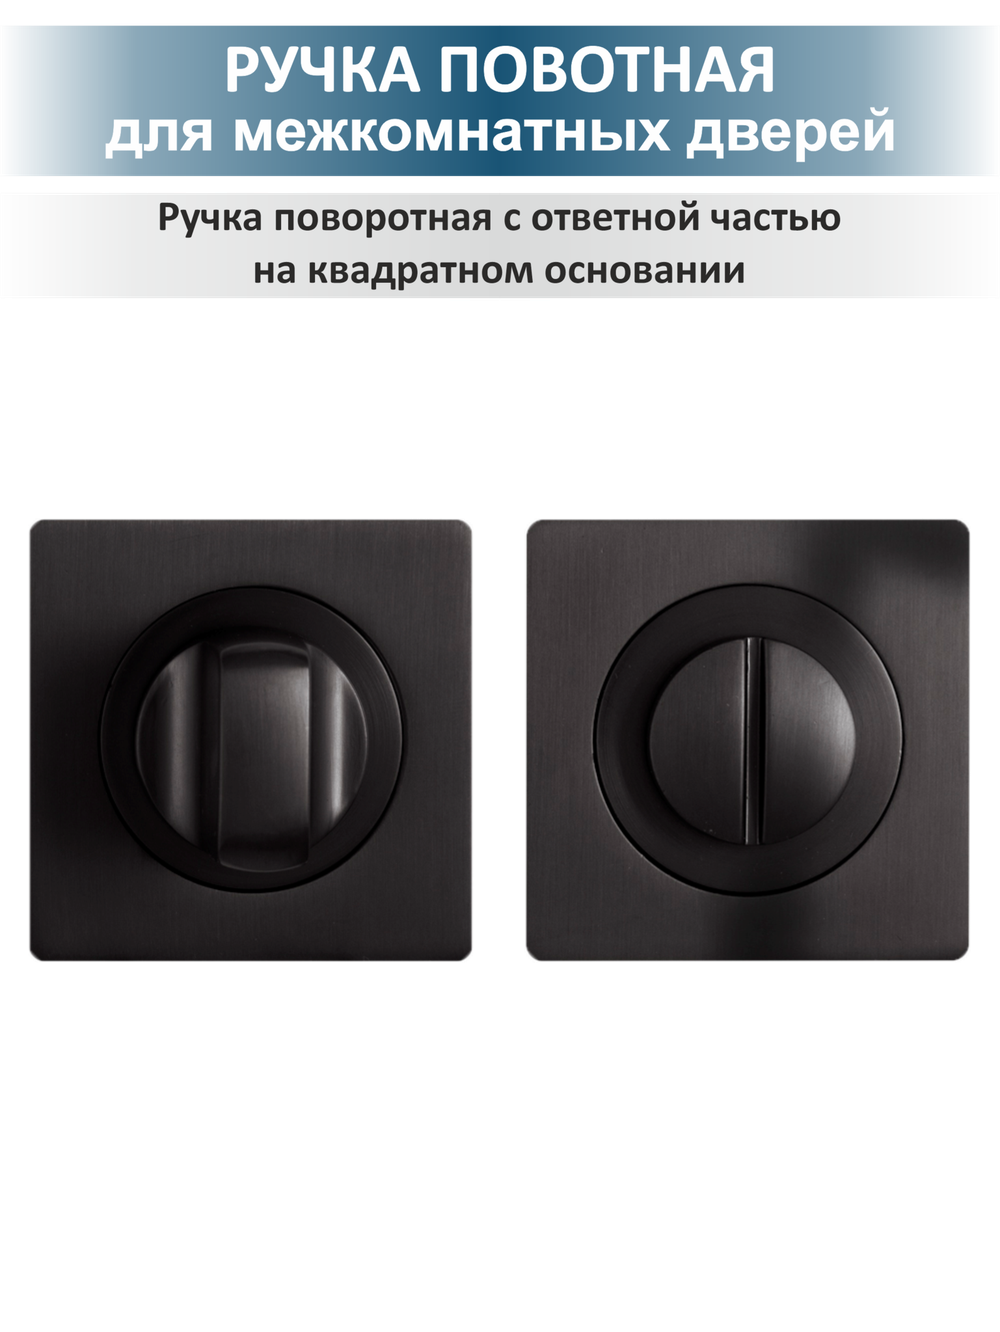 Комплект дверной фурнитуры сантехнический Sigma